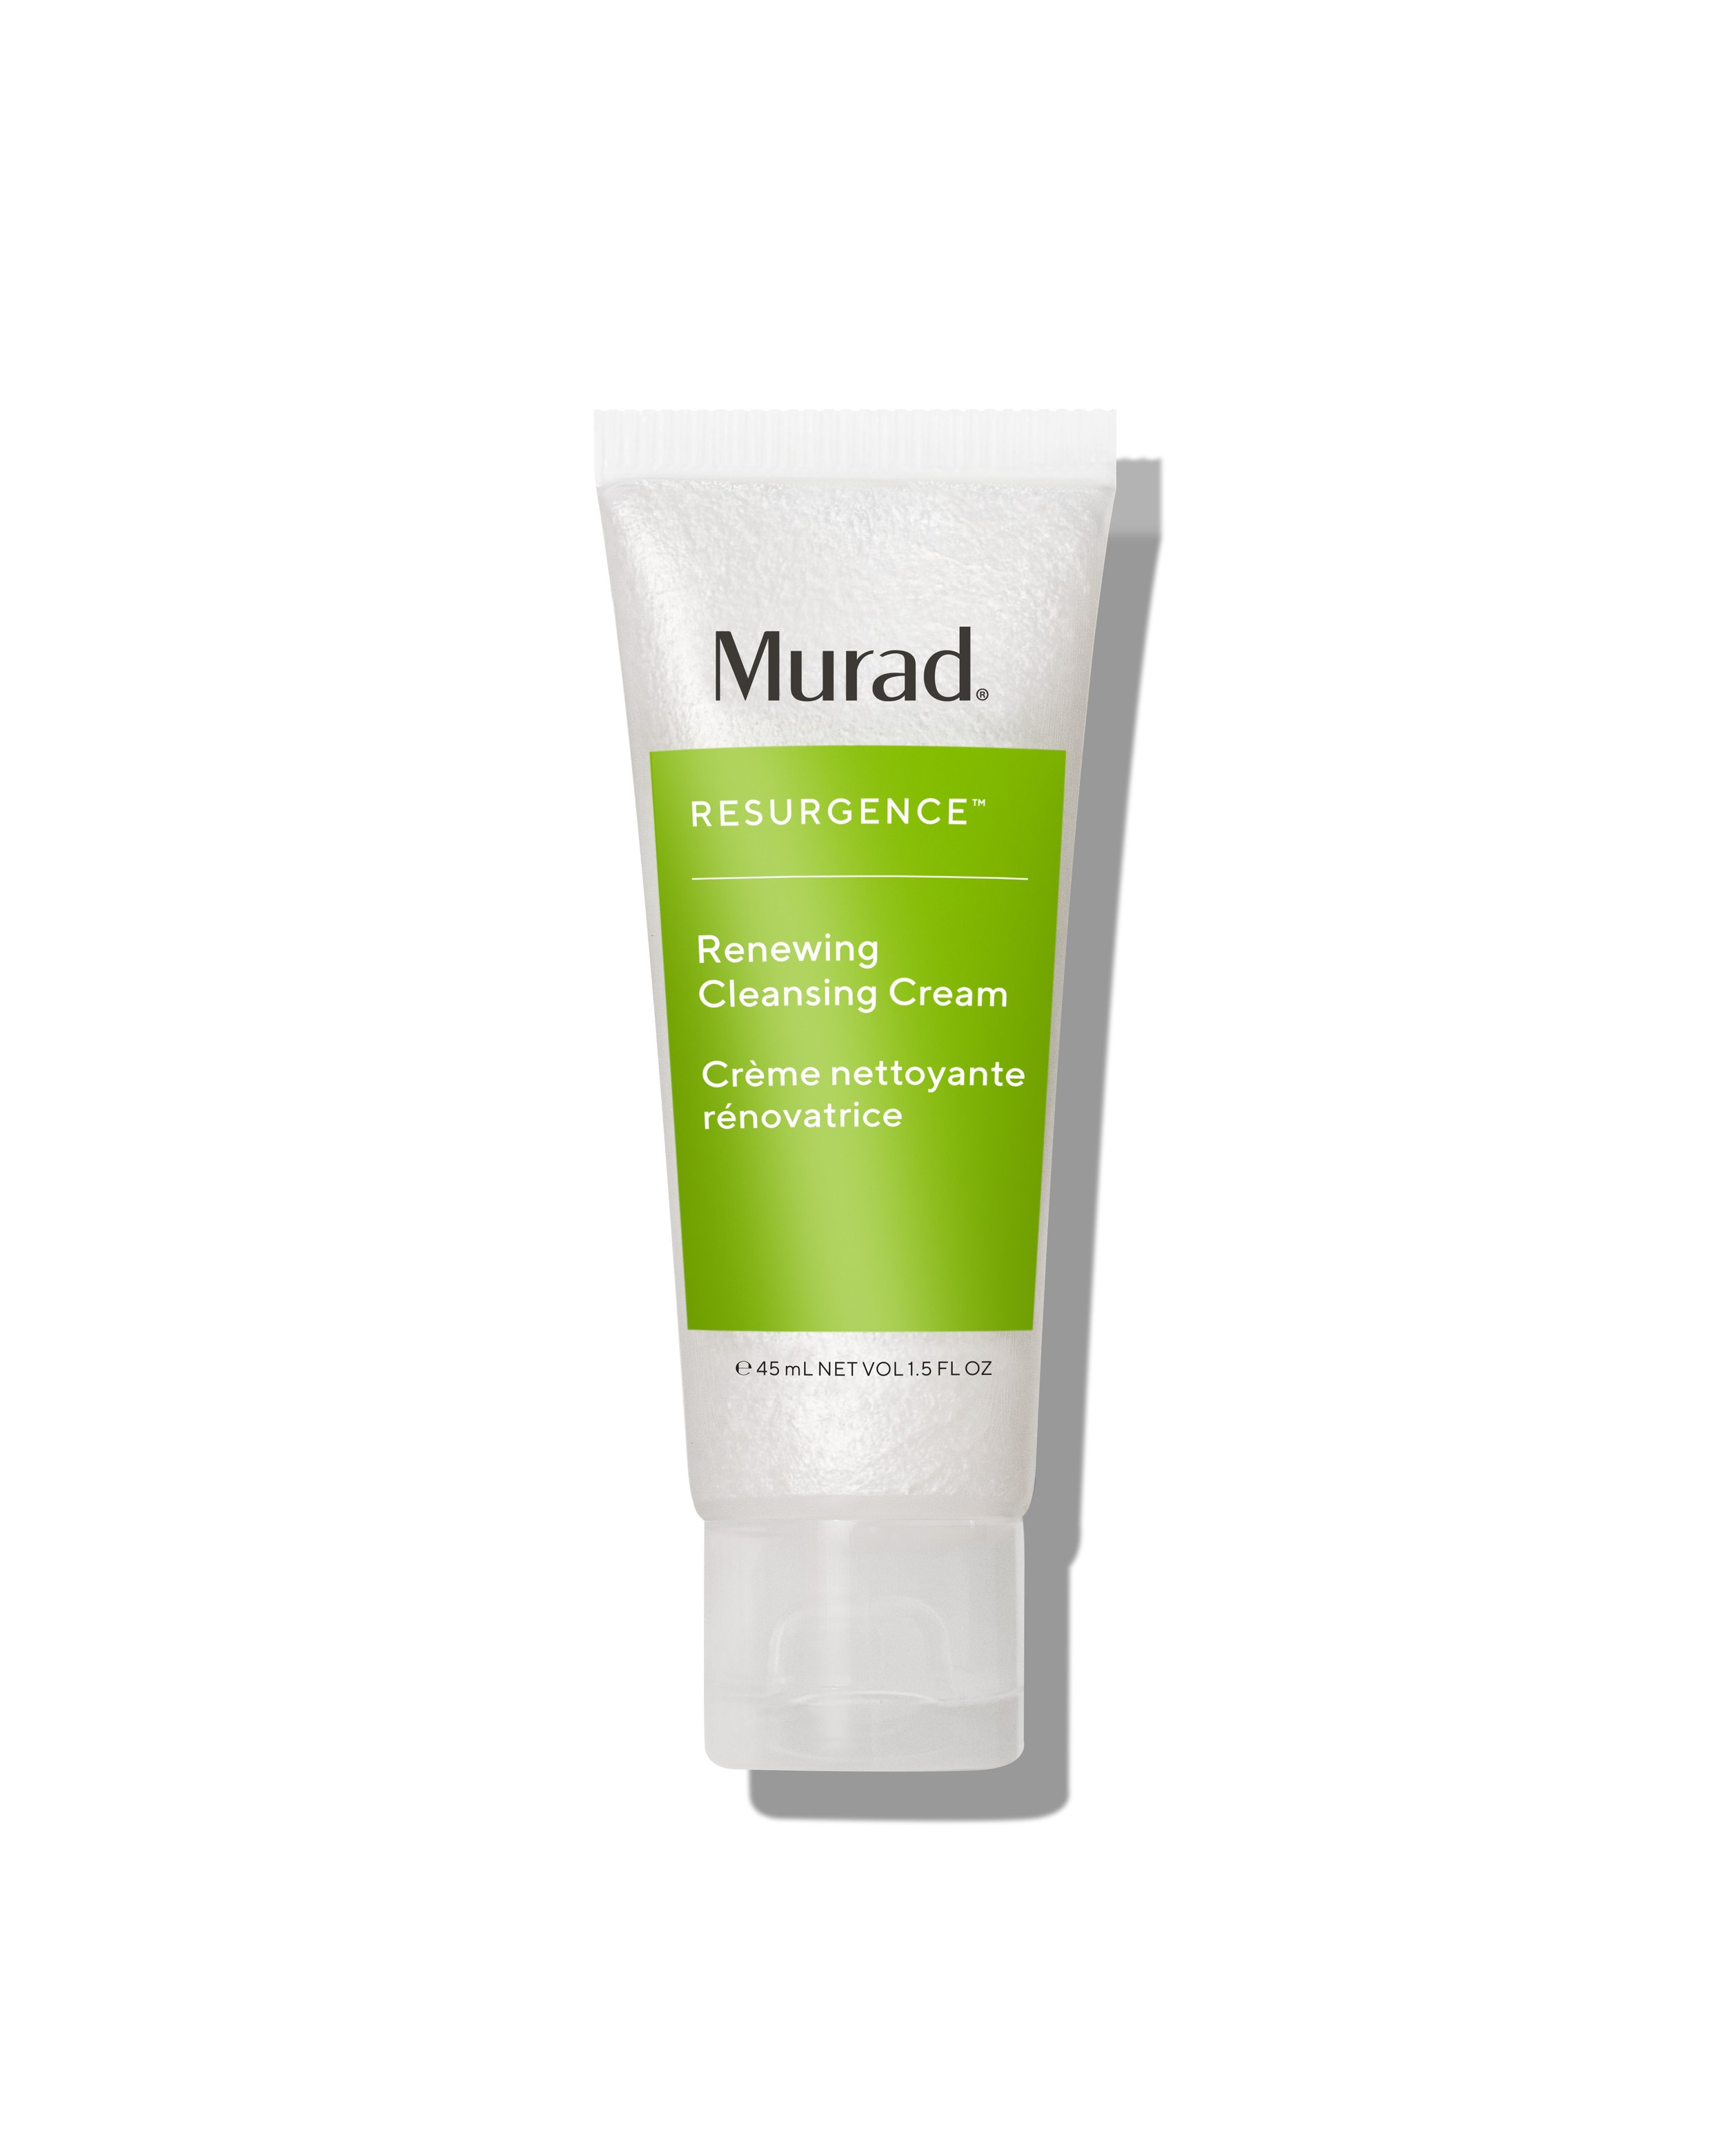 Murad_8_RSG_Renewing Cleansing Cream 1.5oz.jpg